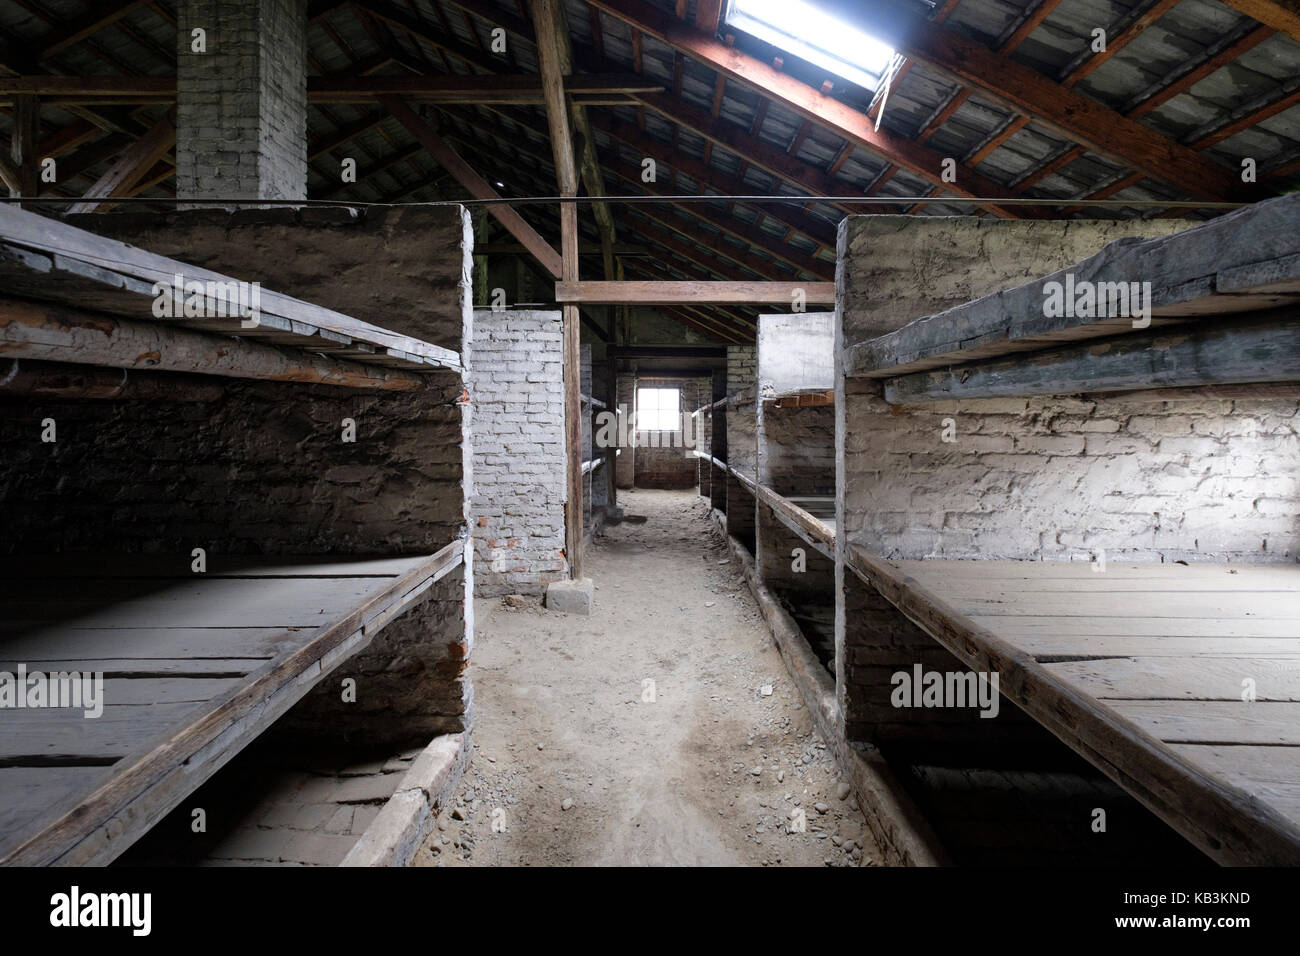 Caserne des prisonniers à Auschwitz II Birkenau camp de concentration nazi de la DEUXIÈME GUERRE MONDIALE, Pologne Banque D'Images